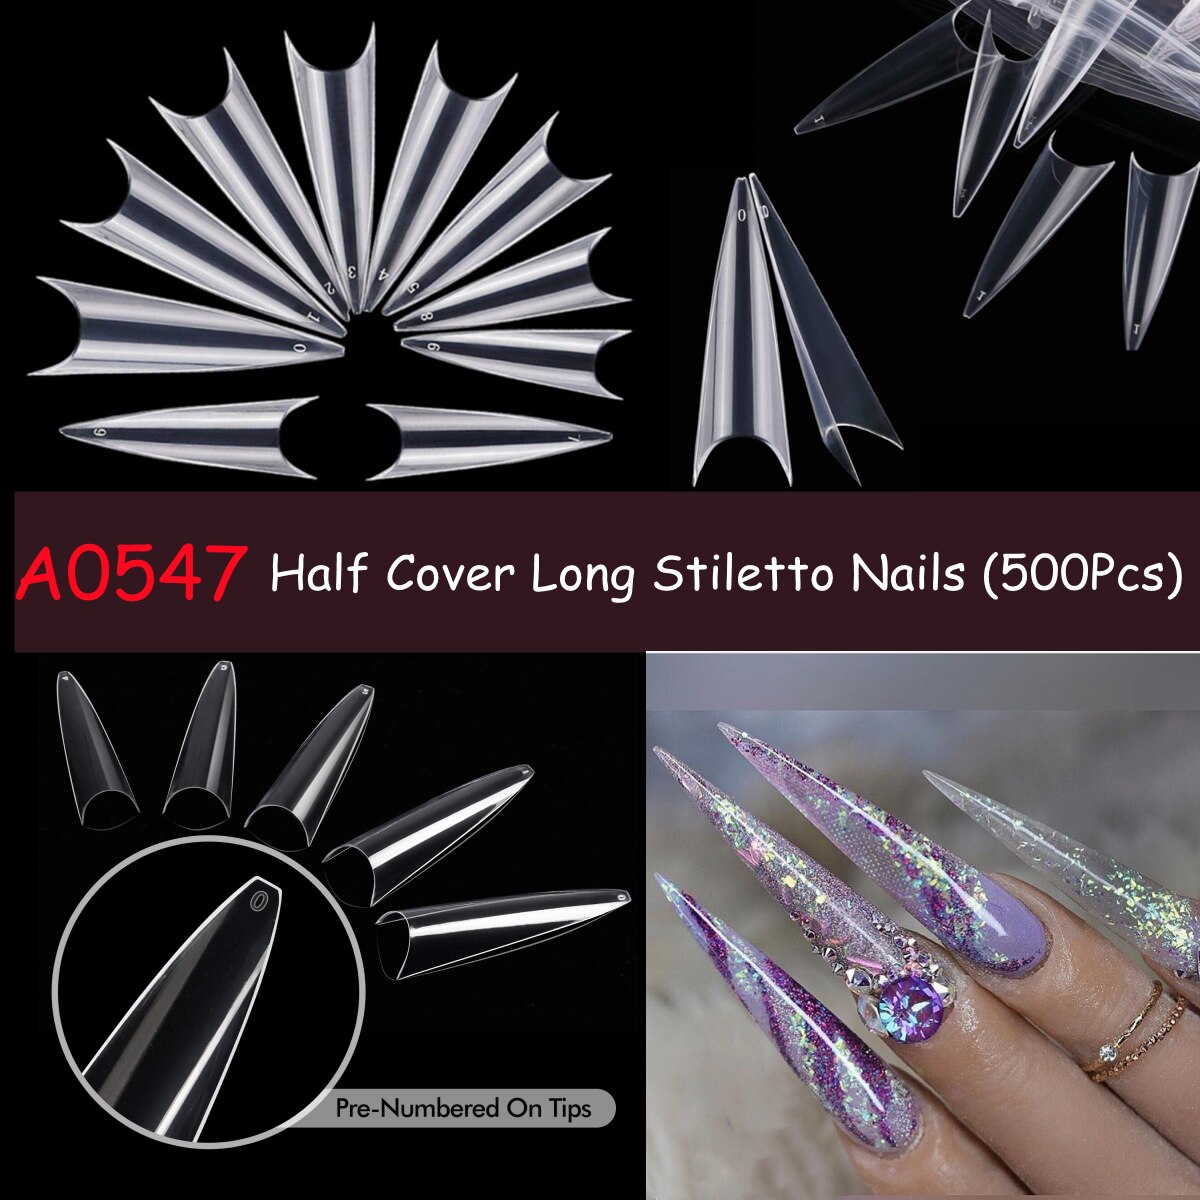 Makartt 500pcs Coffin Nails Long Ballerina False Nails Tips Clear Full Cover Ballet Acrylic Natural Fake Nails Press On Nail